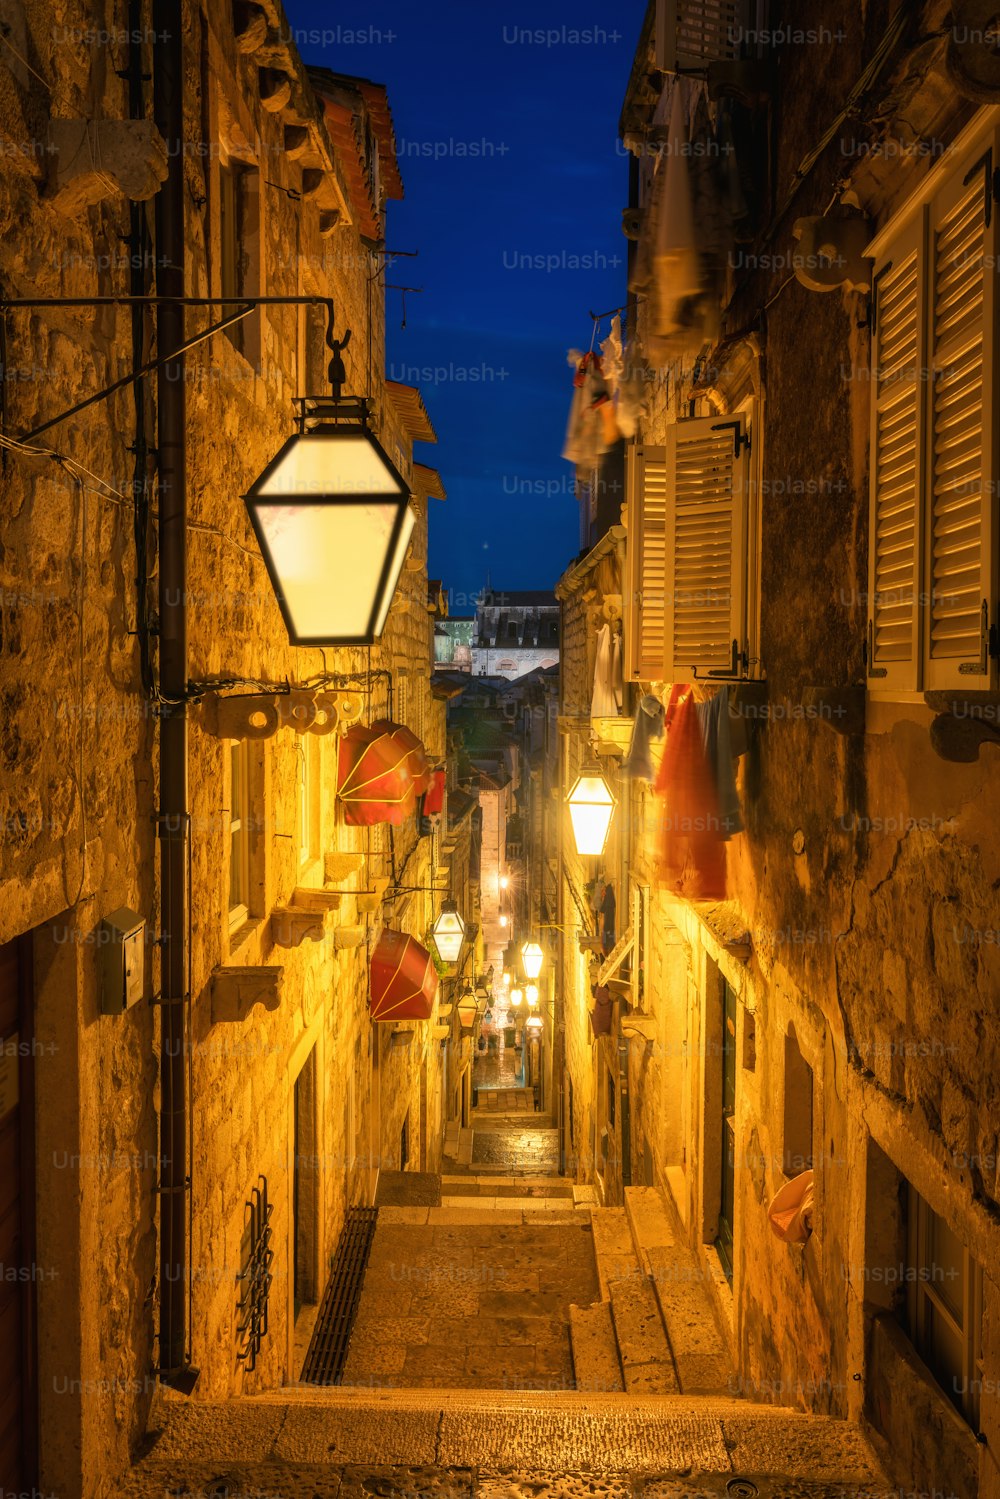 Famoso callejón estrecho del casco antiguo de Dubrovnik en Croacia por la noche - Destacado destino turístico de Croacia. El casco antiguo de Dubrovnik fue declarado Patrimonio de la Humanidad por la UNESCO en 1979.